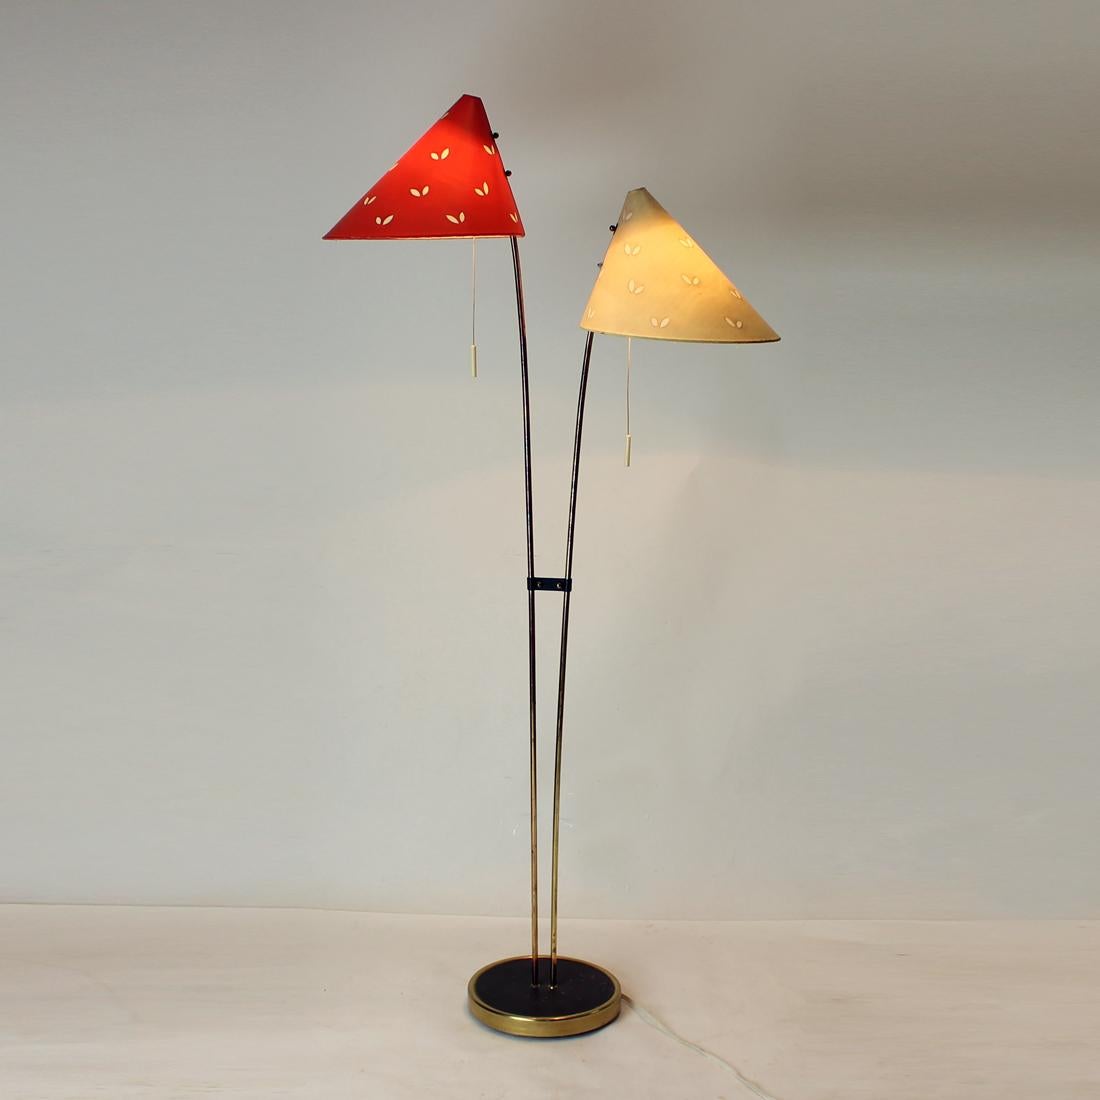 Erstaunliche Stehlampe in einem großartigen Zustand! Diese Lampe wurde in den 1960er Jahren in der Tschechoslowakei von Zukov hergestellt. Steht auf einer starken Messingkonstruktion und Stangen. Das Messing weist nur geringe Altersspuren auf. Die